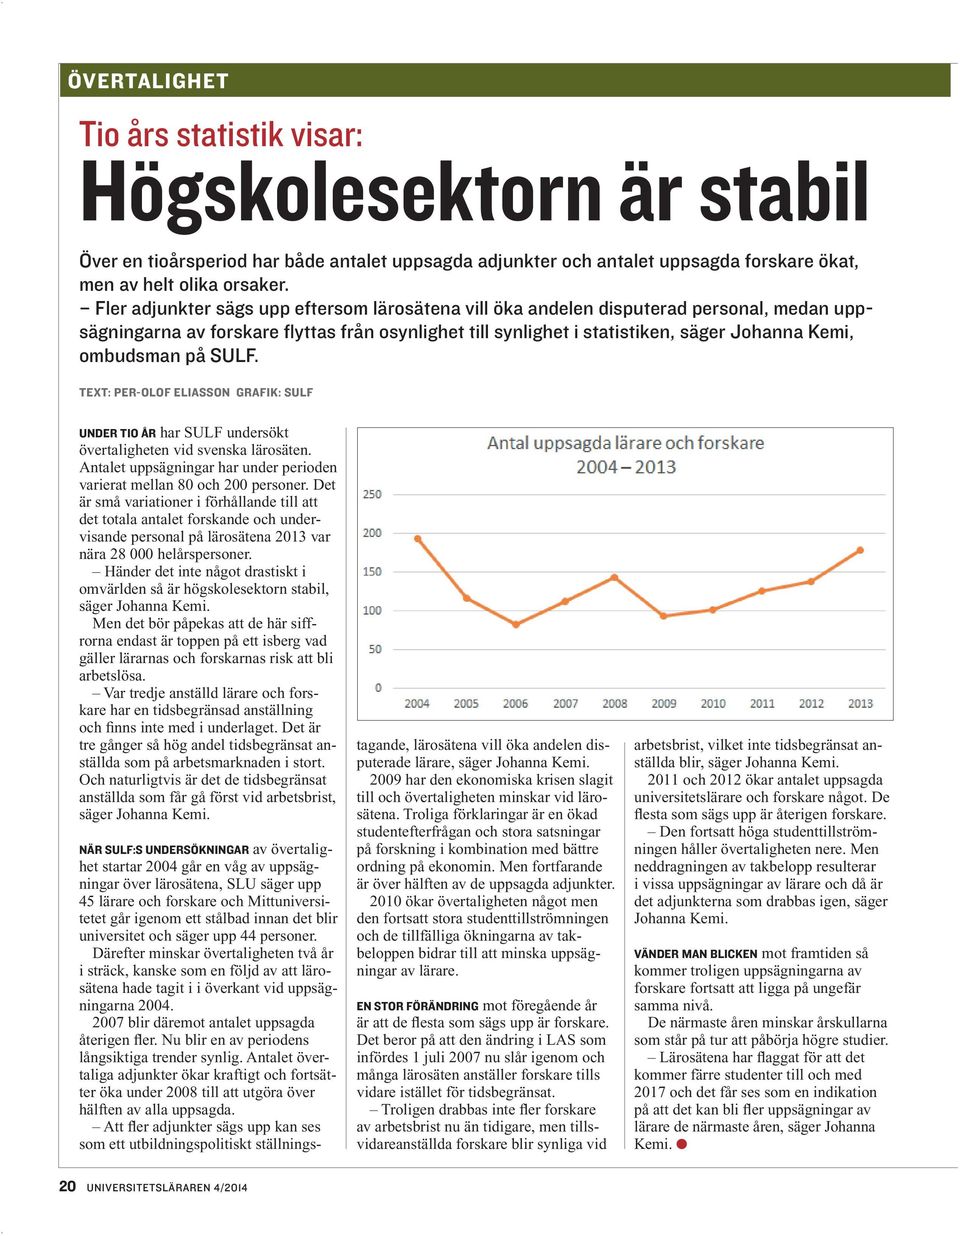 på SULF. text: Per-Olof Eliasson grafik: SULF Under tio år har SULF undersökt över taligheten vid svenska lärosäten. Antalet uppsägningar har under perioden varierat mellan 80 och 200 personer.